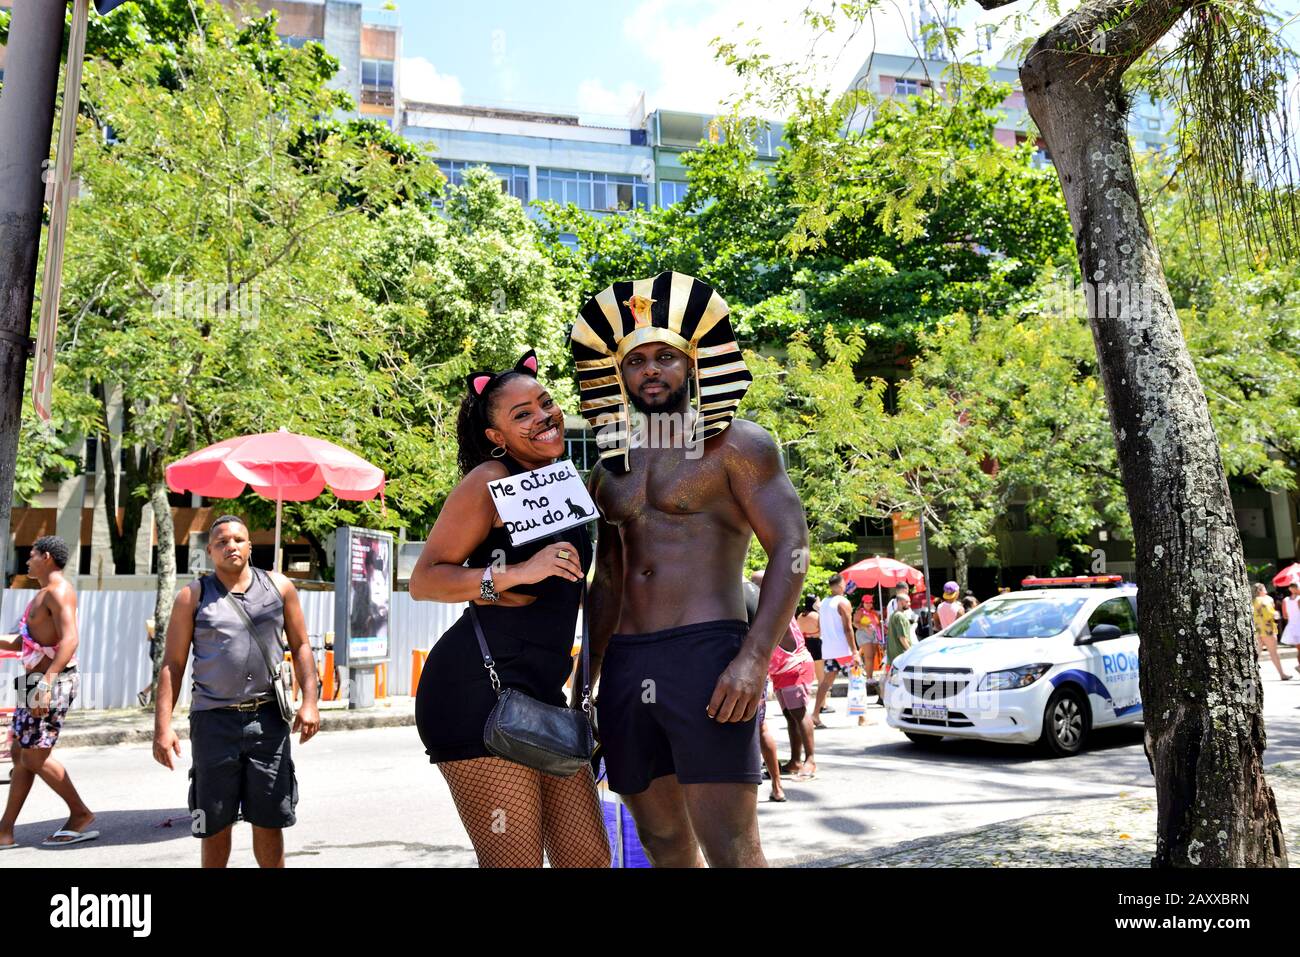 Brésil – le 8 février 2020 : les révéeurs costqués apprécient les festivités de la rue du Carnaval de Rio de Janeiro, un événement avec intérêt touristique international Banque D'Images